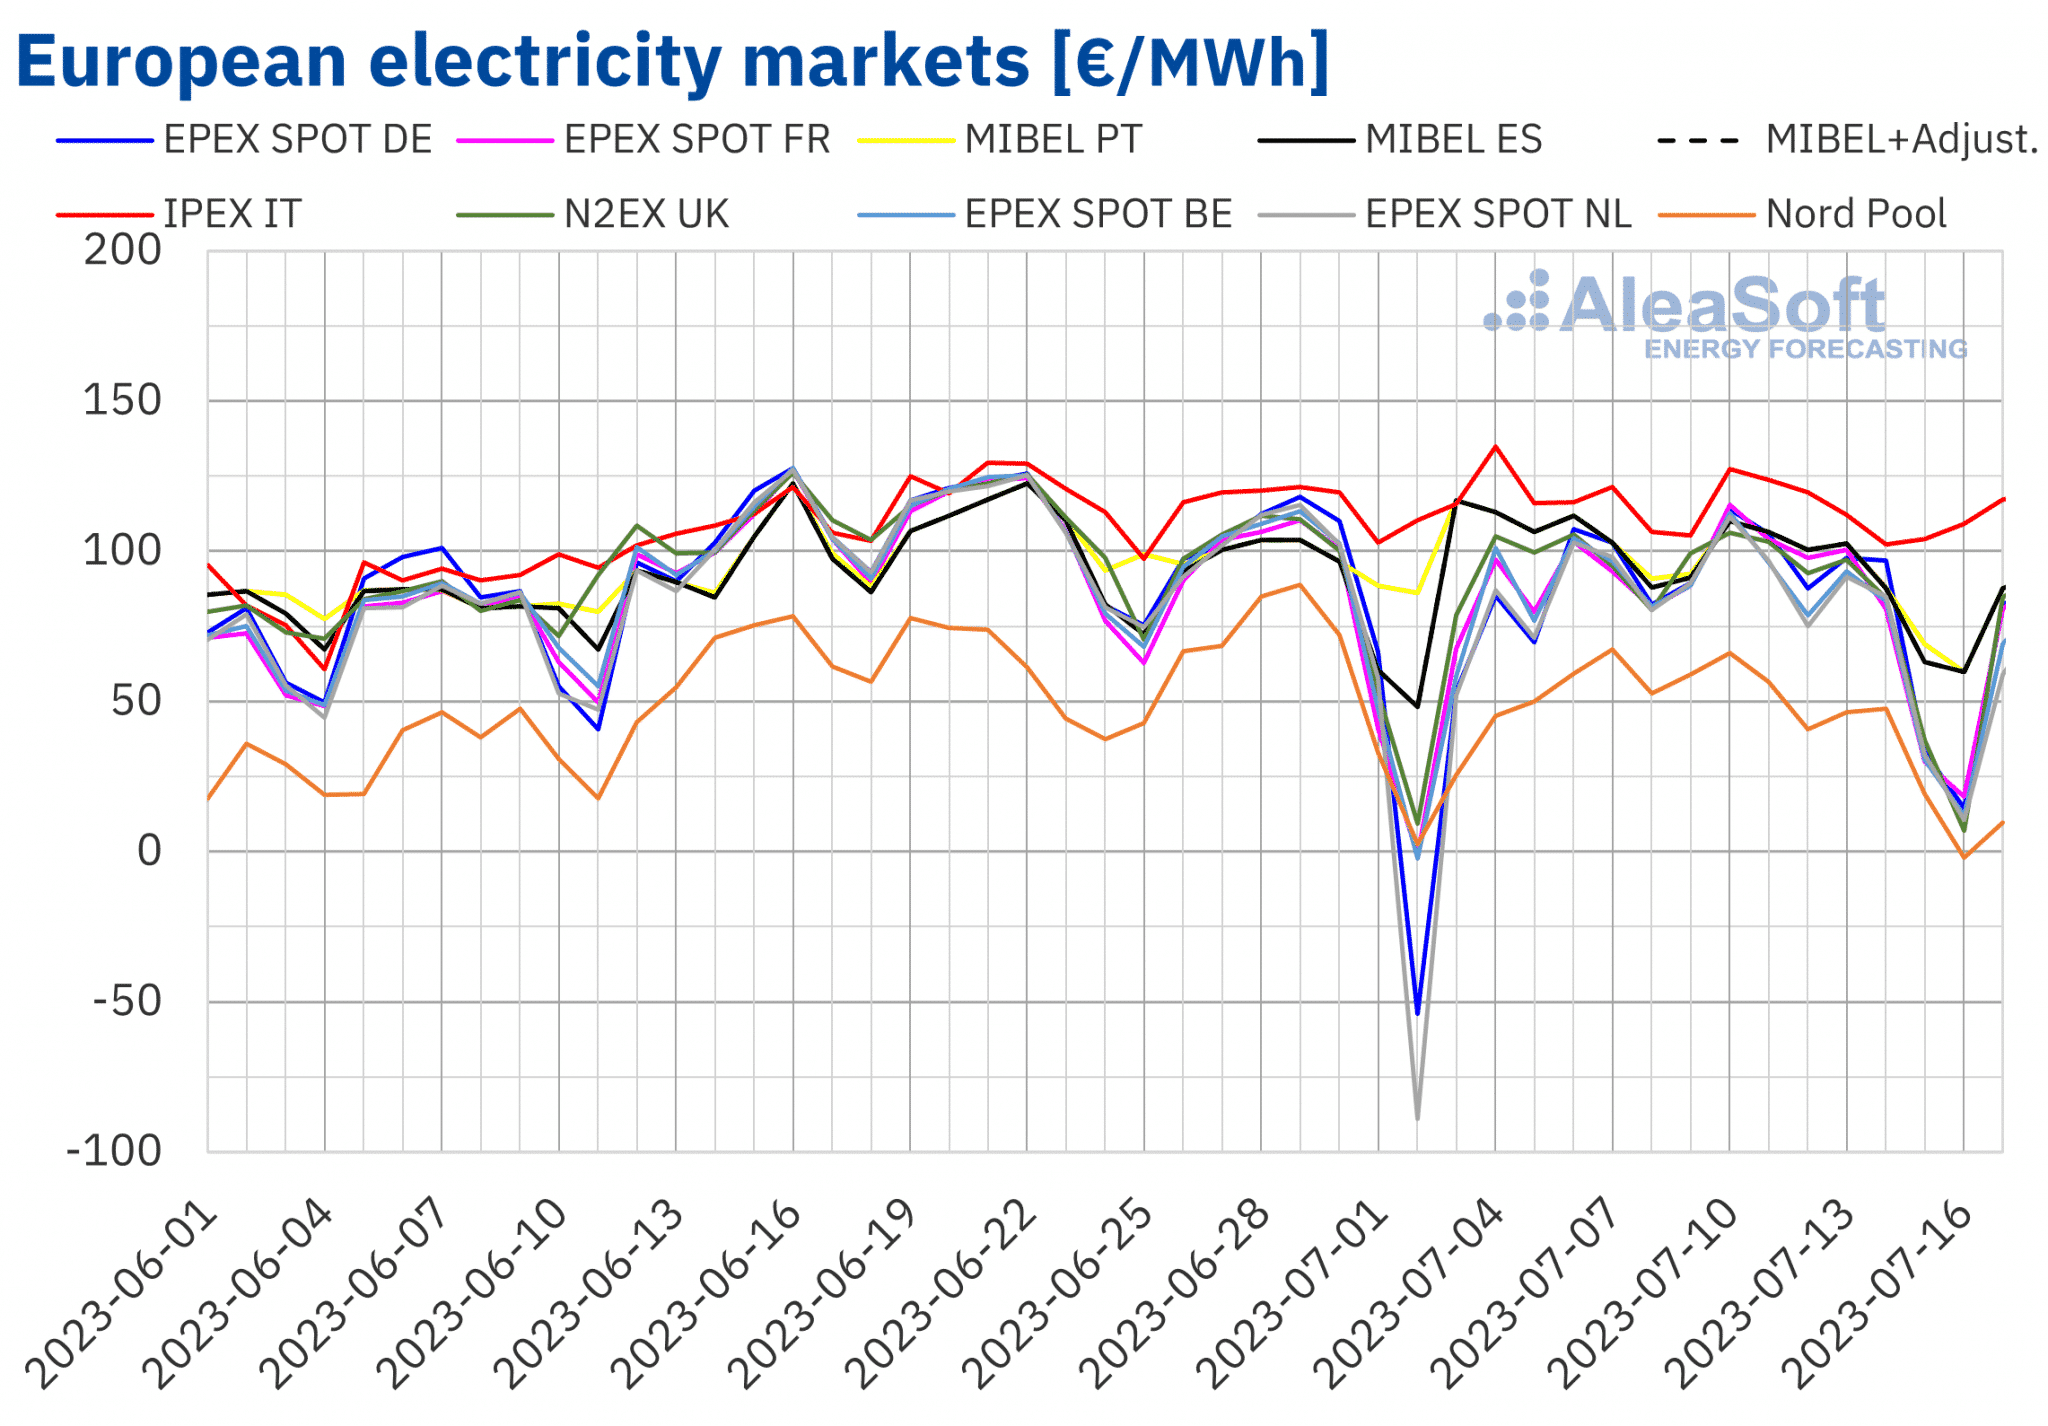 AleaSoft - Precios del mercado eléctrico europeo